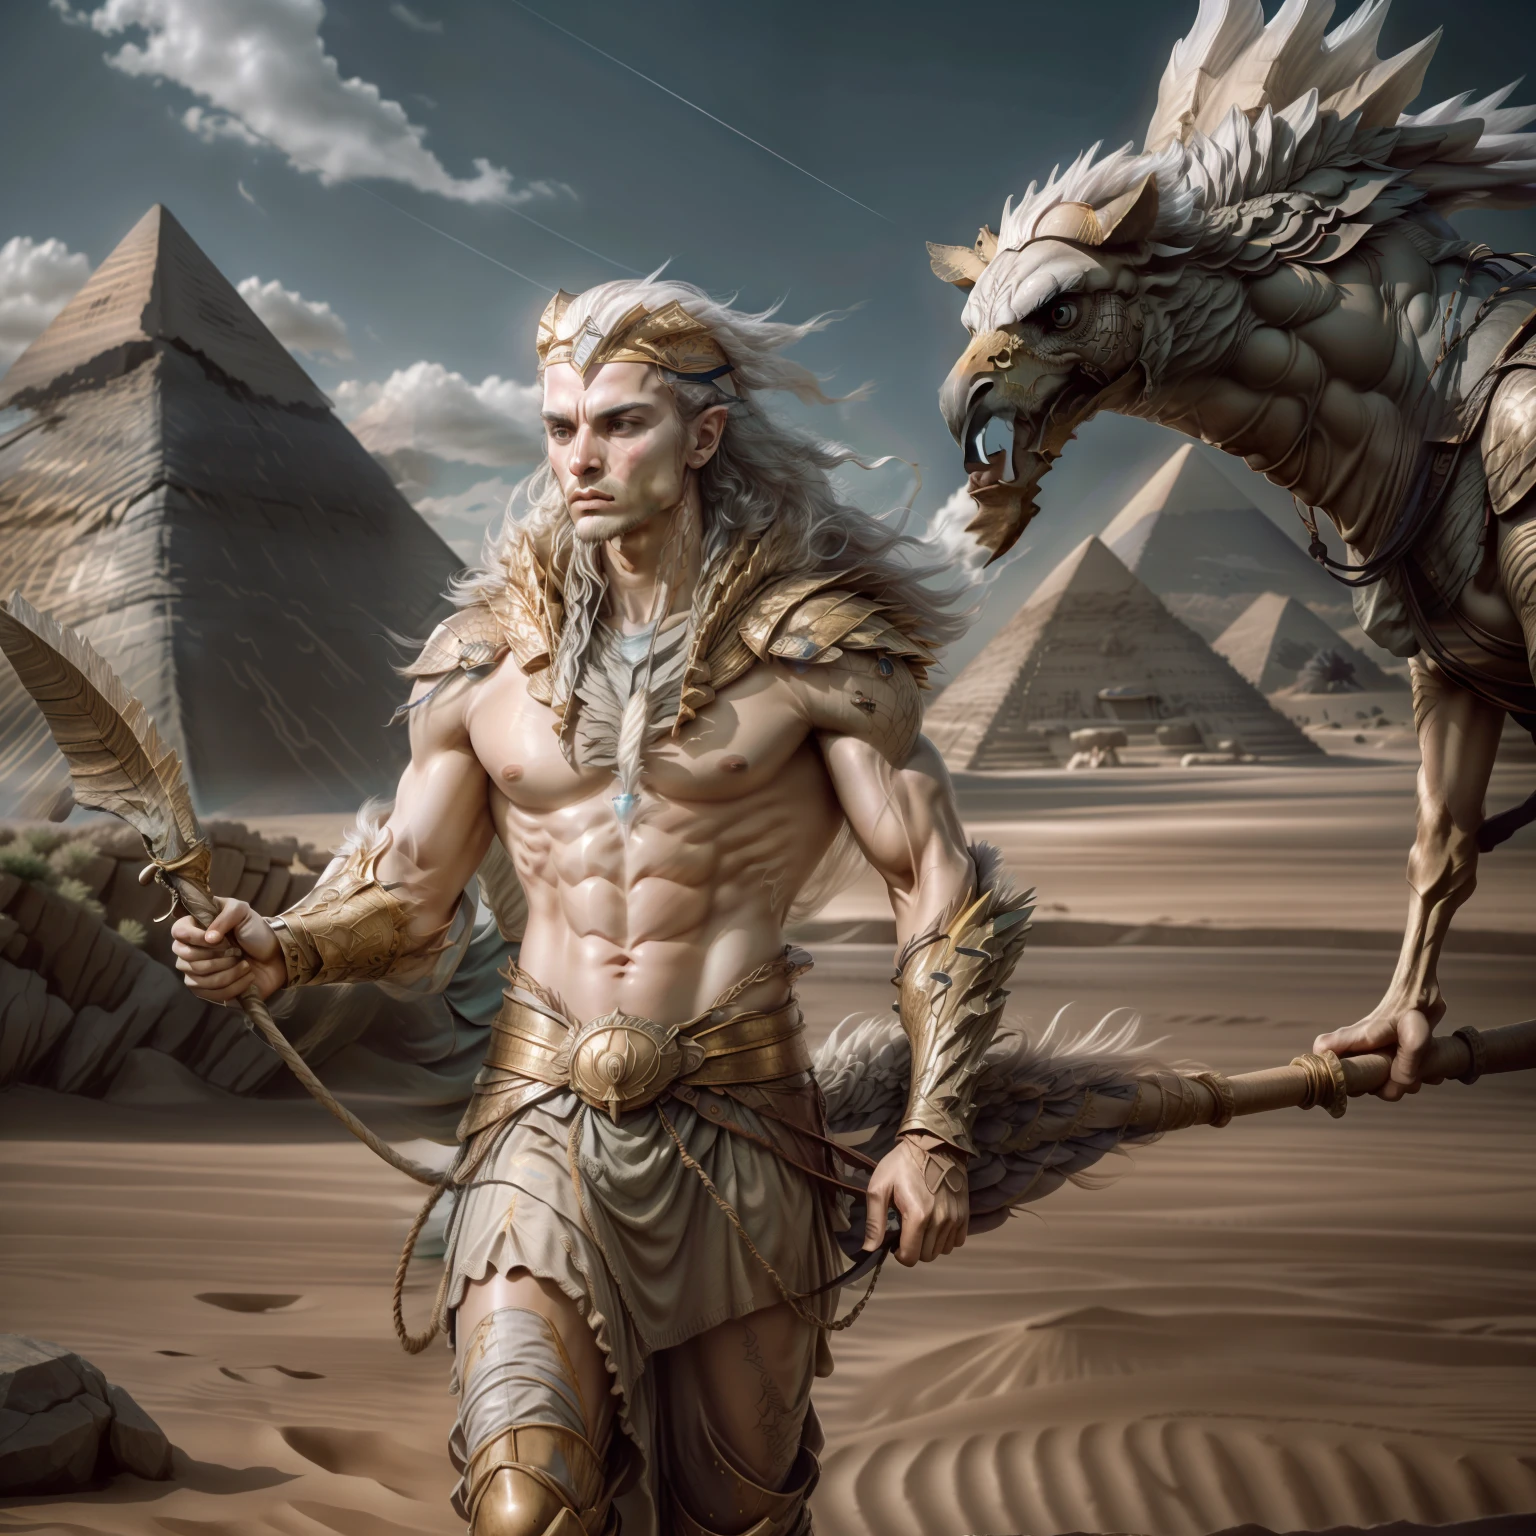 amon, cabeza de águila, cuerpo fuerte, 5 dedos en las manos, sosteniendo un bastón, 18k, ultra realista, Senado egipcio, con pirámides detrás, desierto, camellos, viento suave, --auto